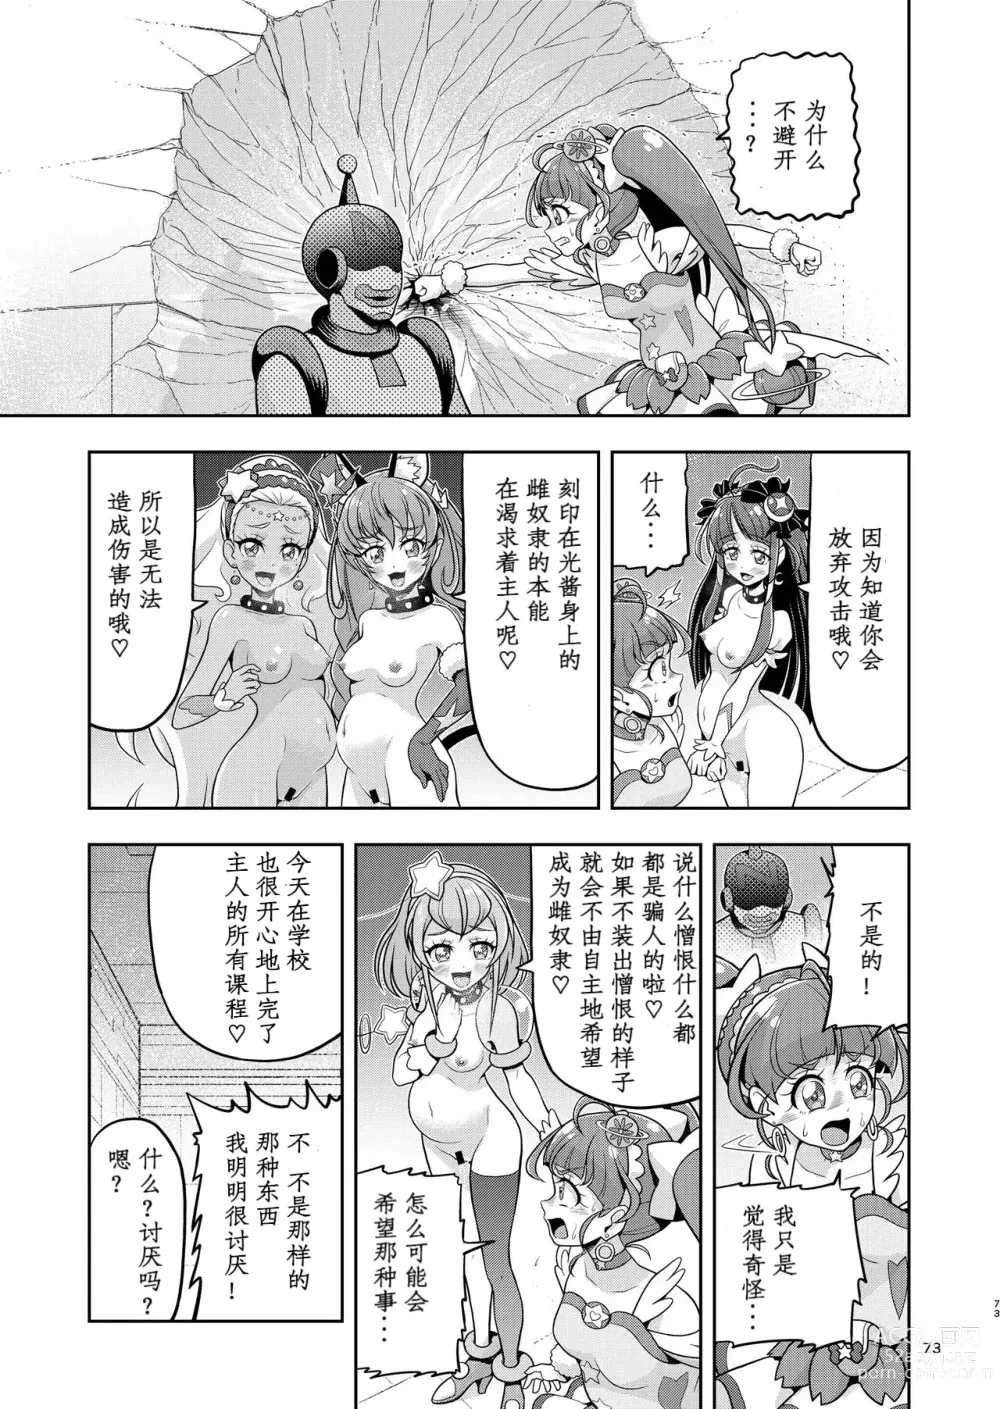 Page 23 of doujinshi Hoshi Asobi 2